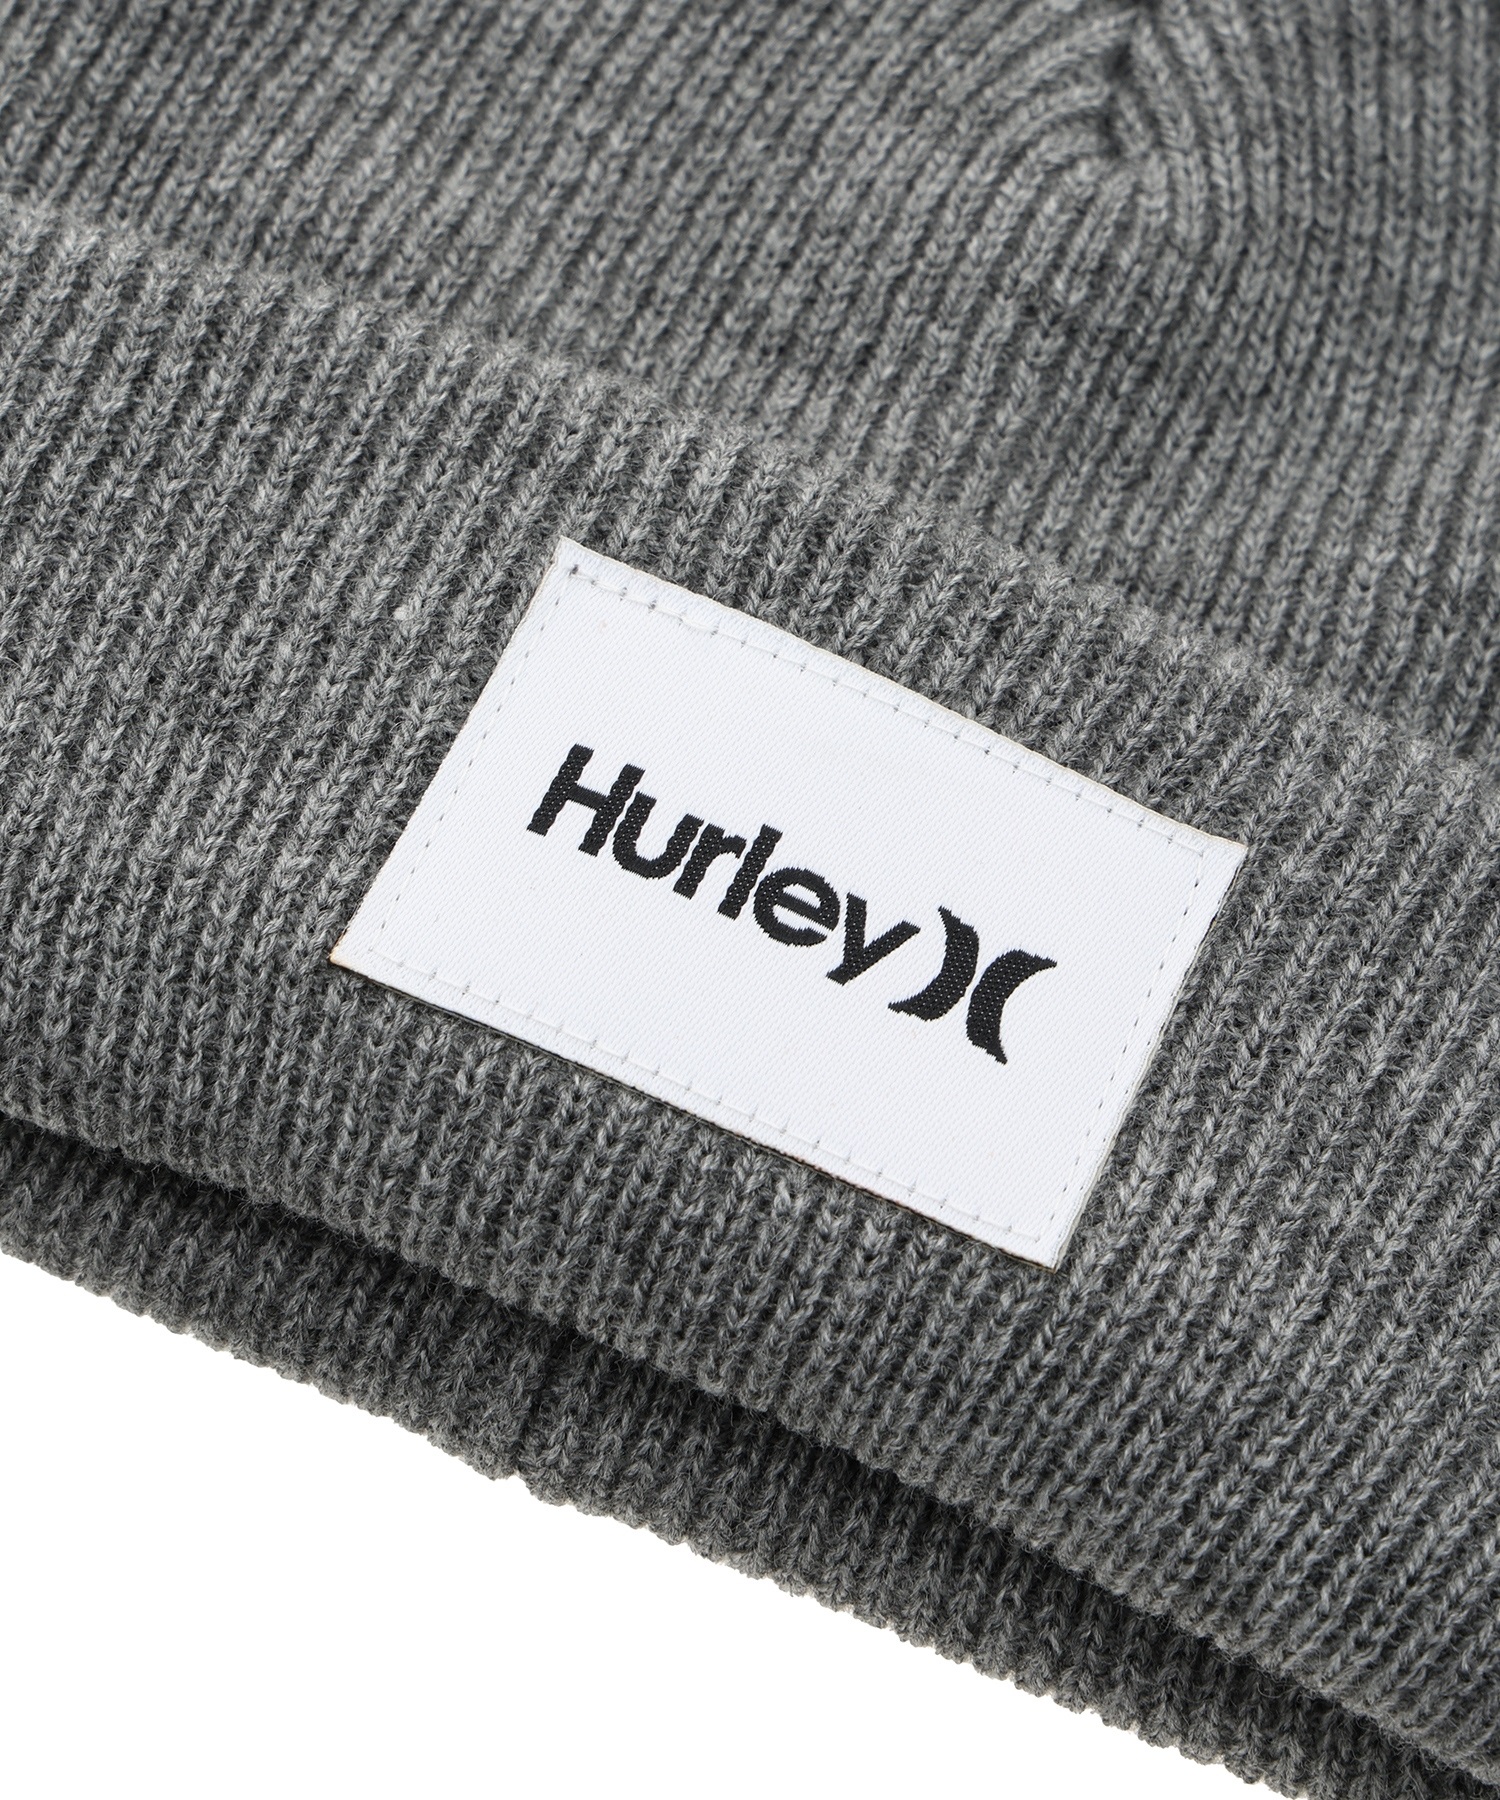 Hurley ハーレー ビーニーBHW2200001 キッズ ビーニー(OLV-F)